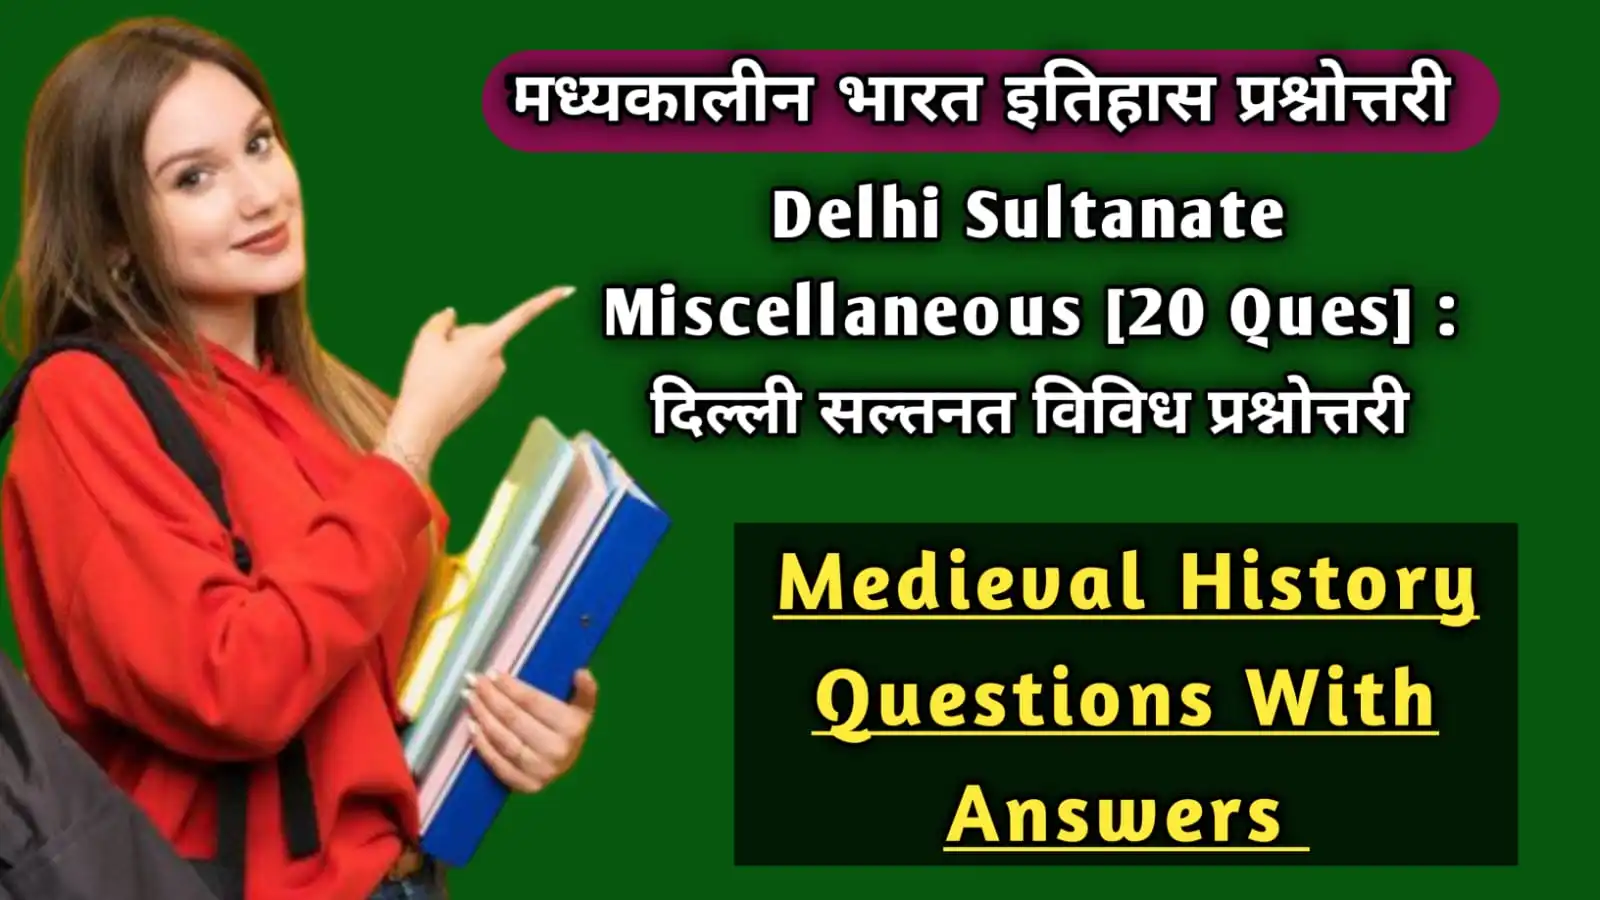 Delhi Sultanate Miscellaneous Quiz